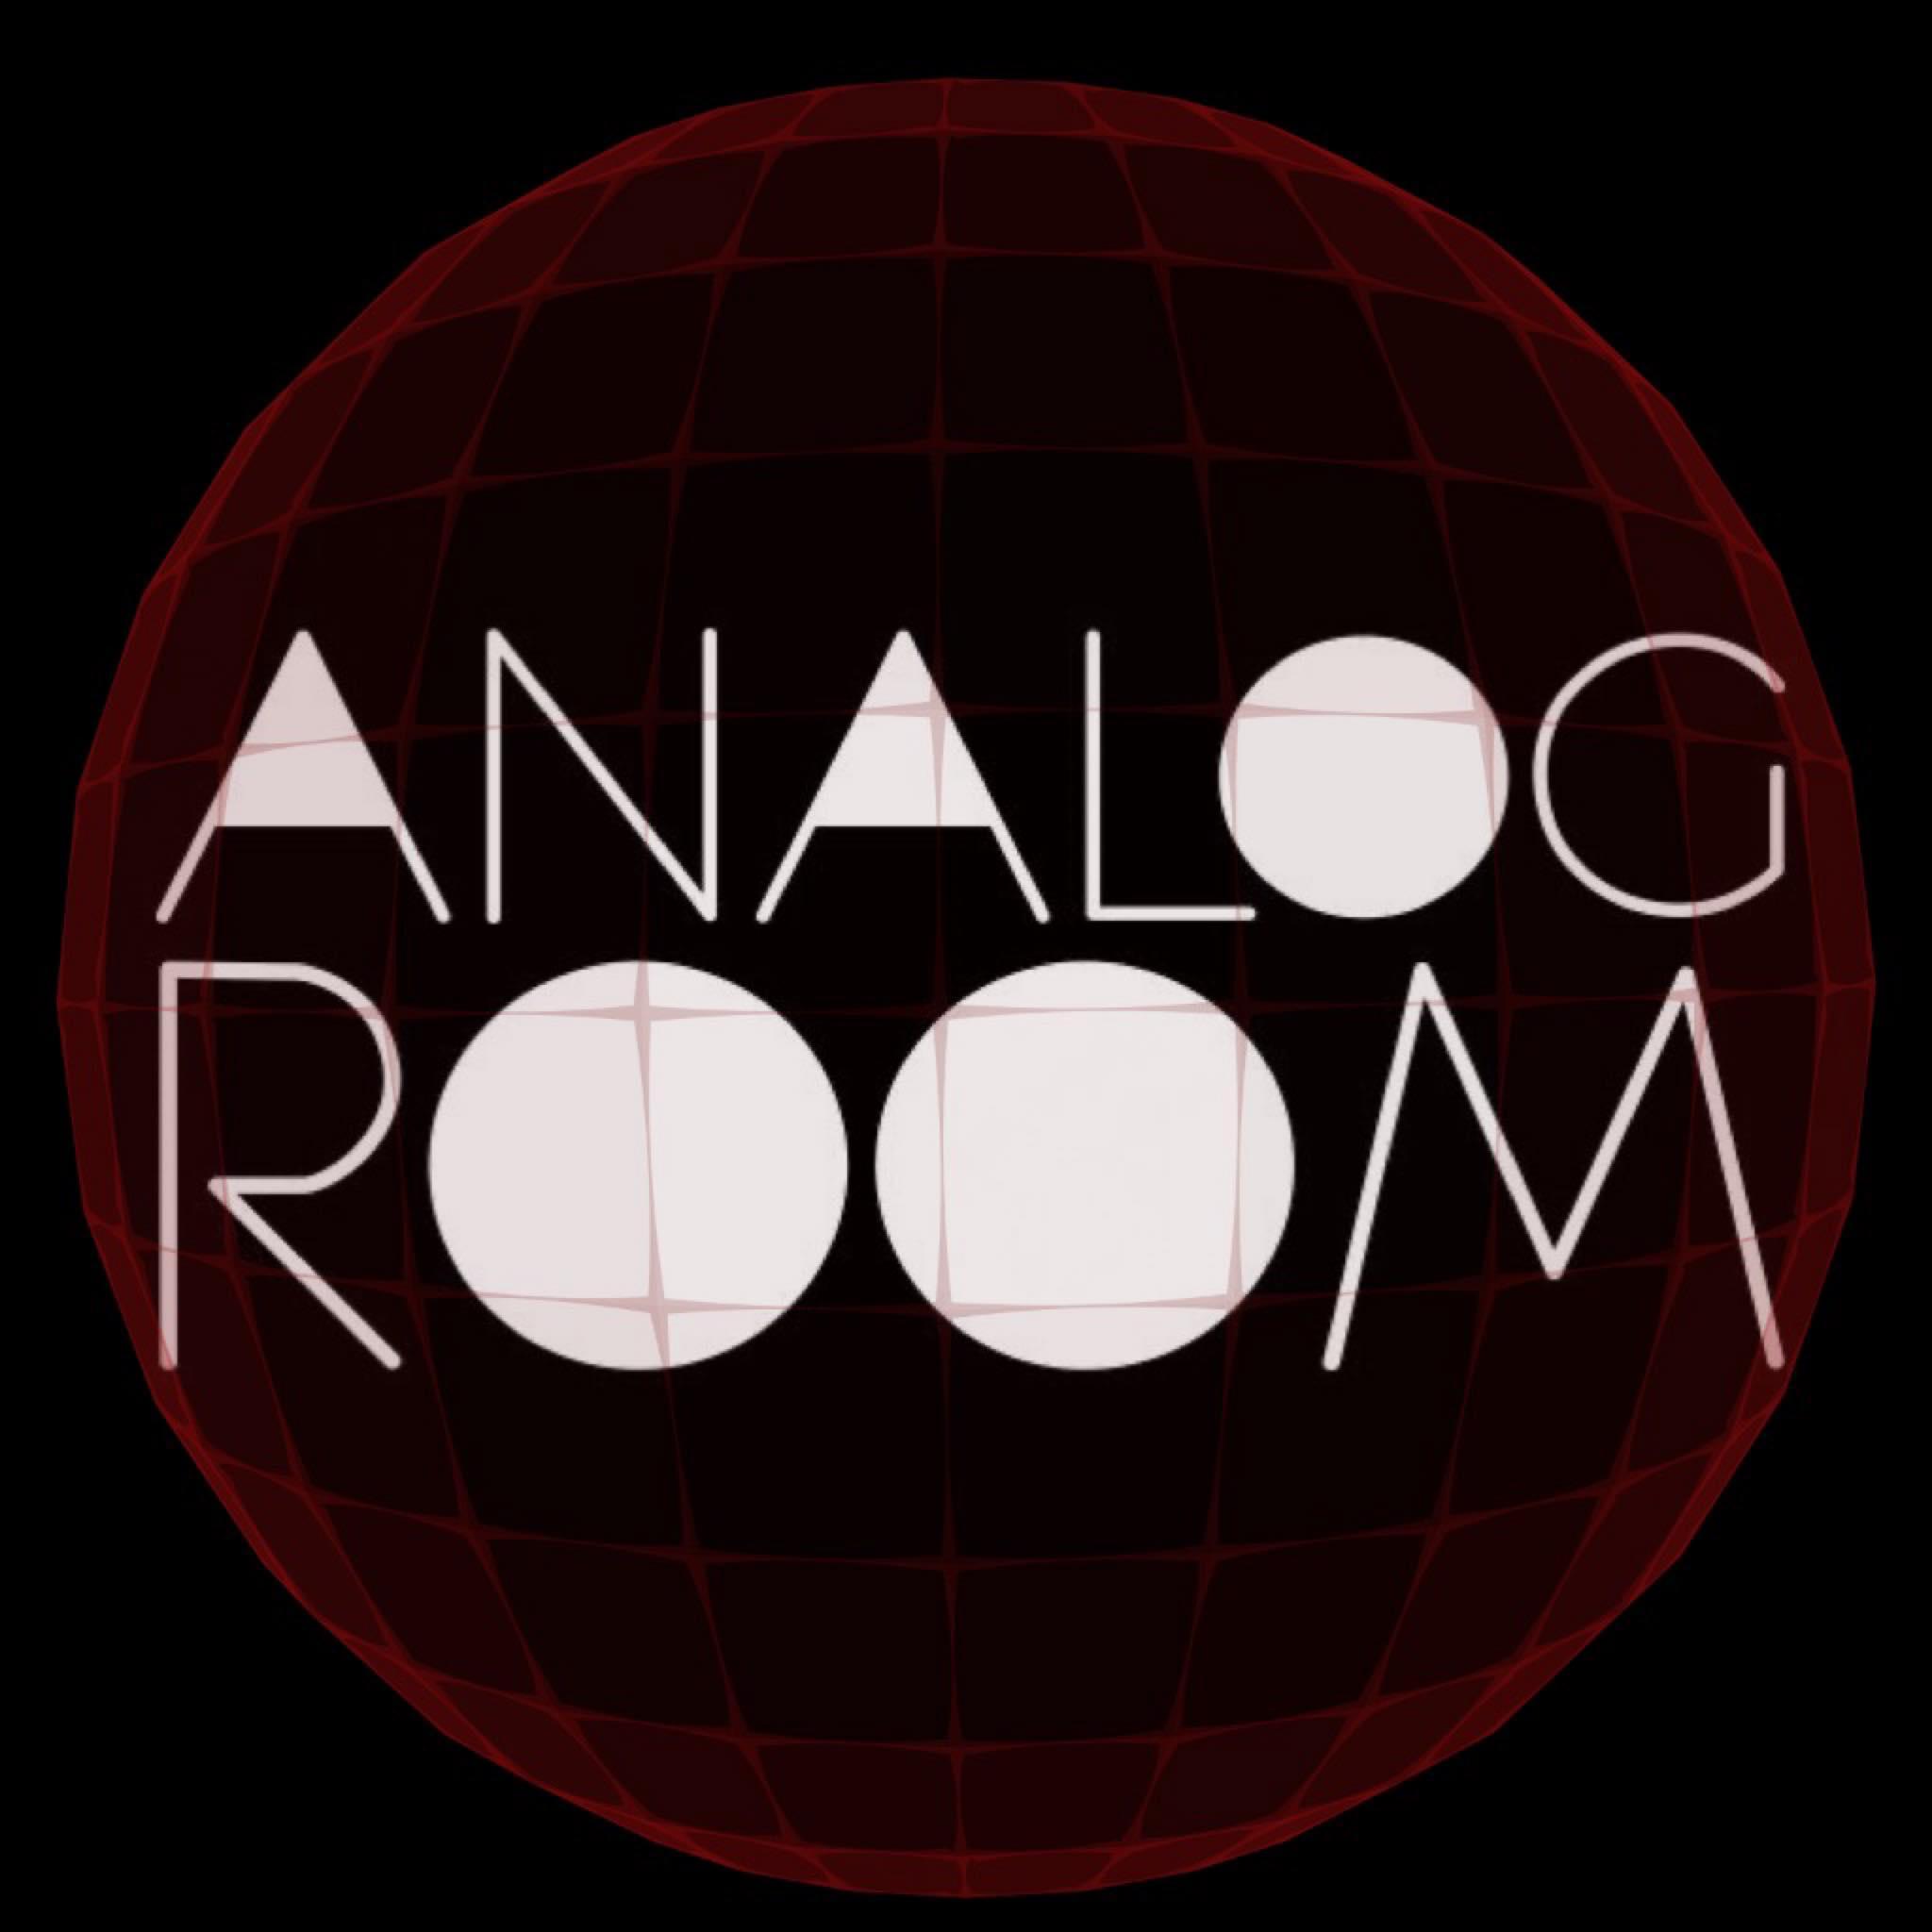 Analog Room pres. DJ Masda - Todd - Borna Farshid